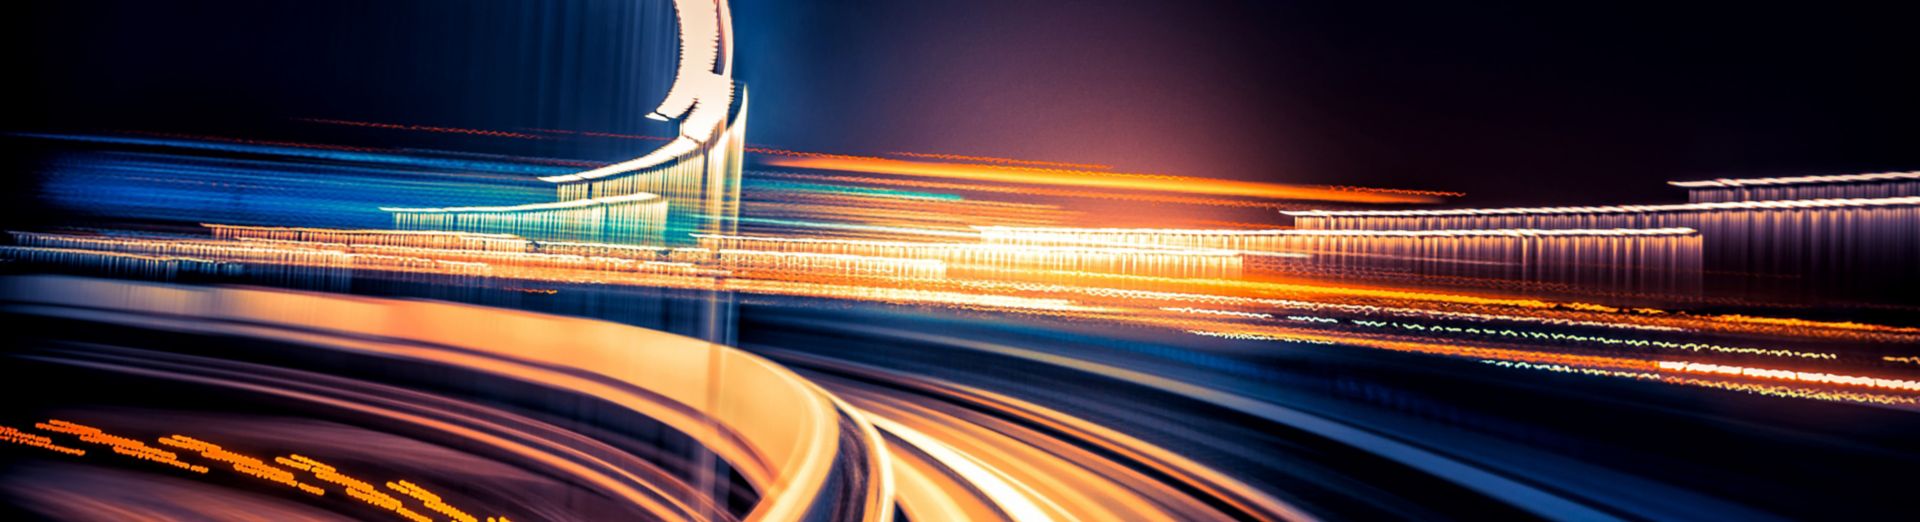 Ένα δίκτυο συνδεδεμένων αυτοκινητοδρόμων που αντιπροσωπεύουν το SAP Business Network